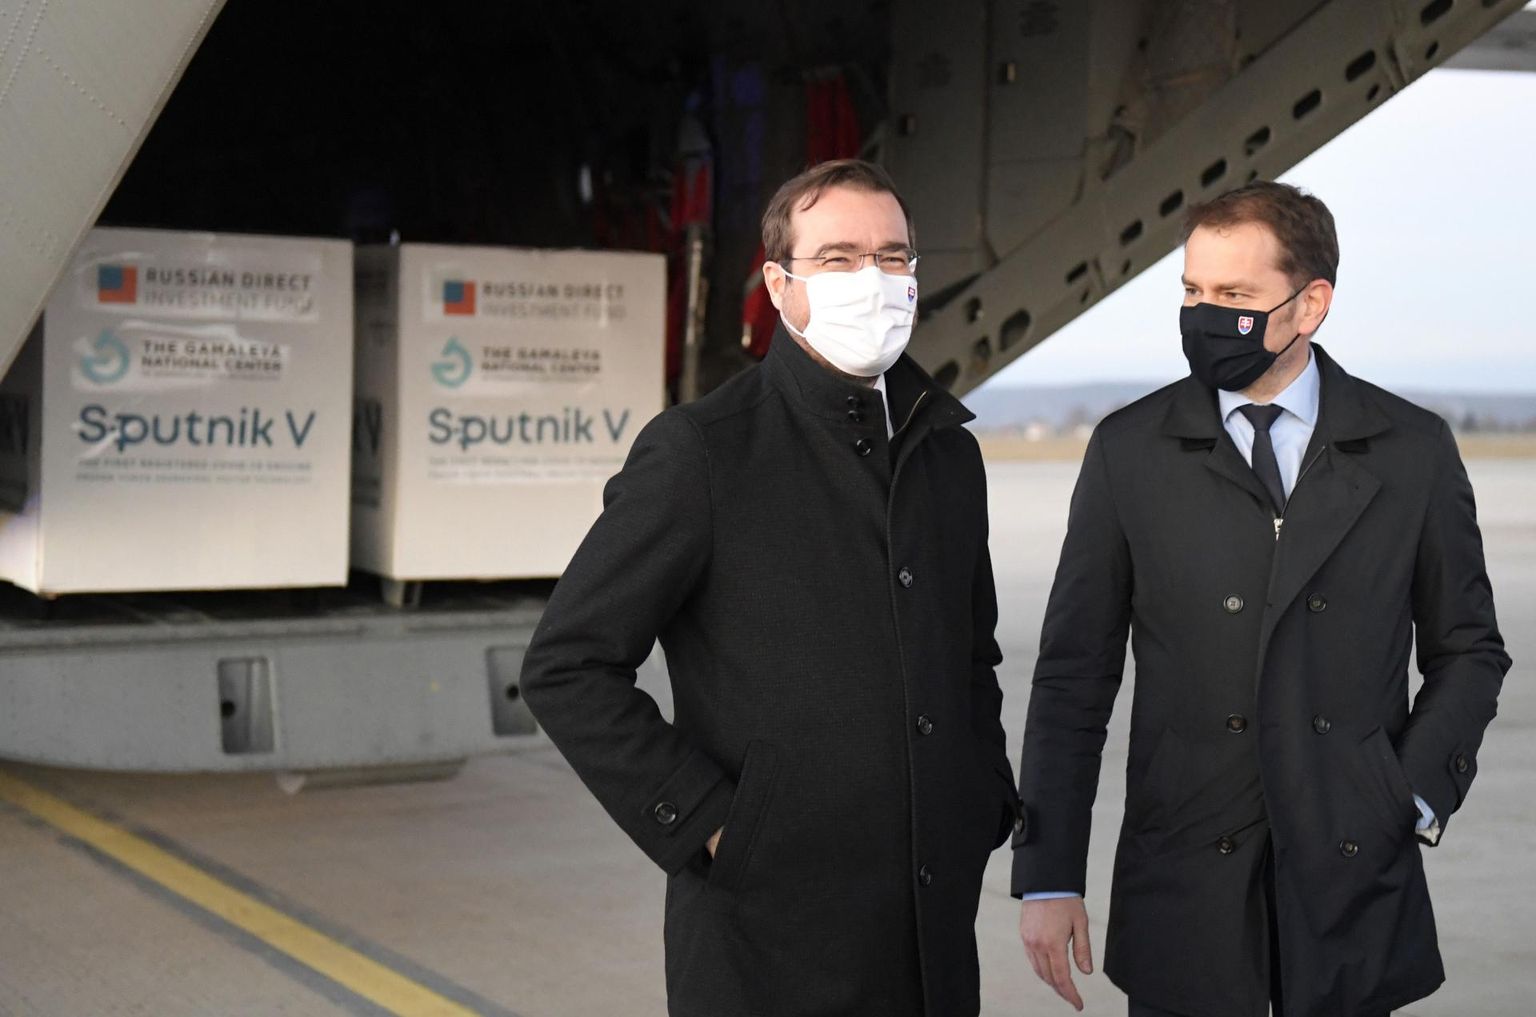 Slovakkia endine peaminister Igor Matovič (paremal) ja endine tervishoiuminister Marek Krajčí 1. märtsil lennujaamas Sputnik V vaktsiinisaadetist vastu võtmas. Tehing maksis mõlemale ameti, kuigi Matovič jätkab uues valitsuses rahandusministrina.